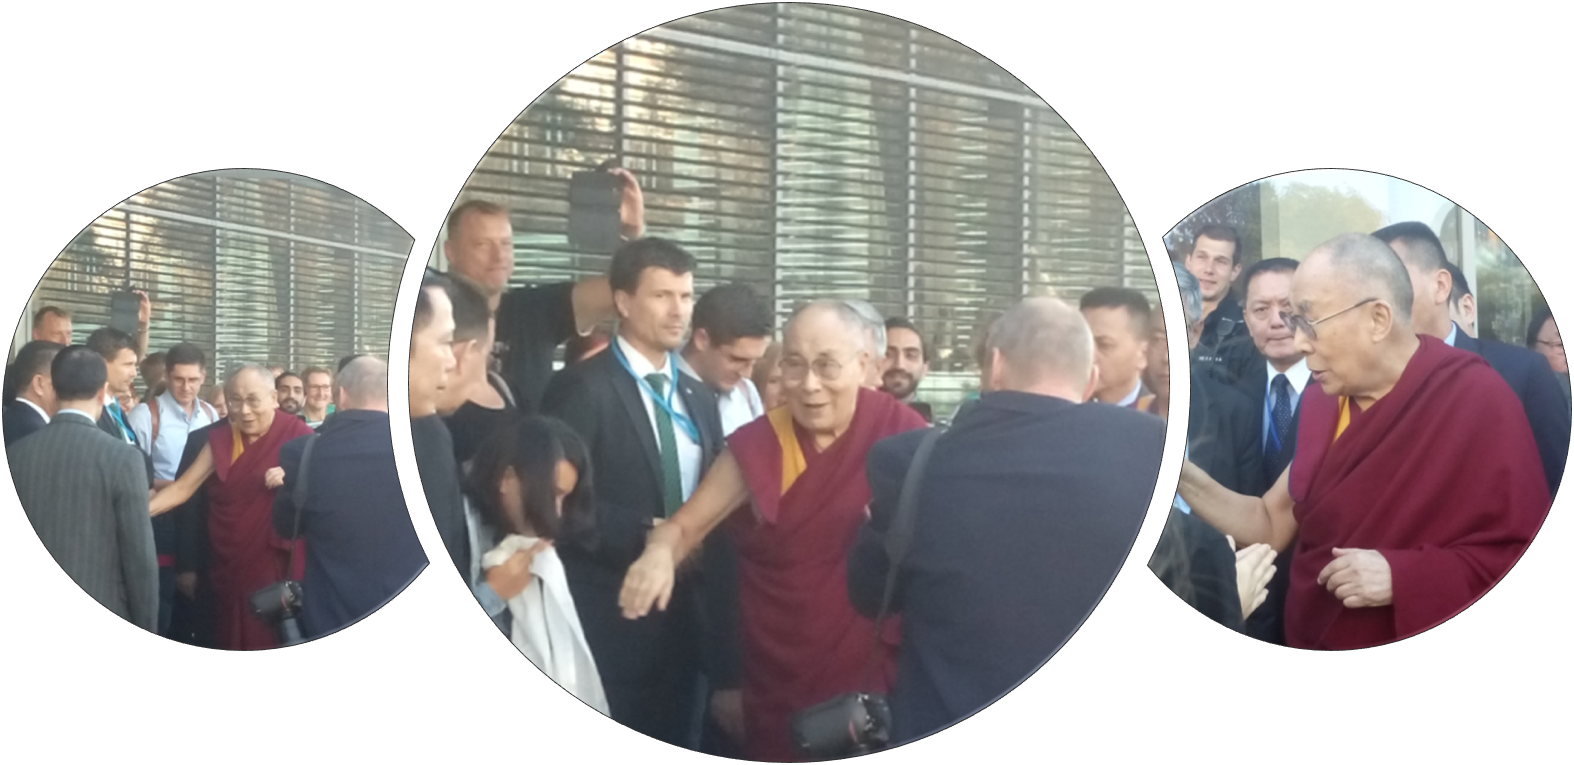 Der Tag, an dem ich dem Dalai Lama die Hand schüttelte – und warum auch ein Blick, ein Gruß oder eine Frage Wertschätzung ausdrücken.